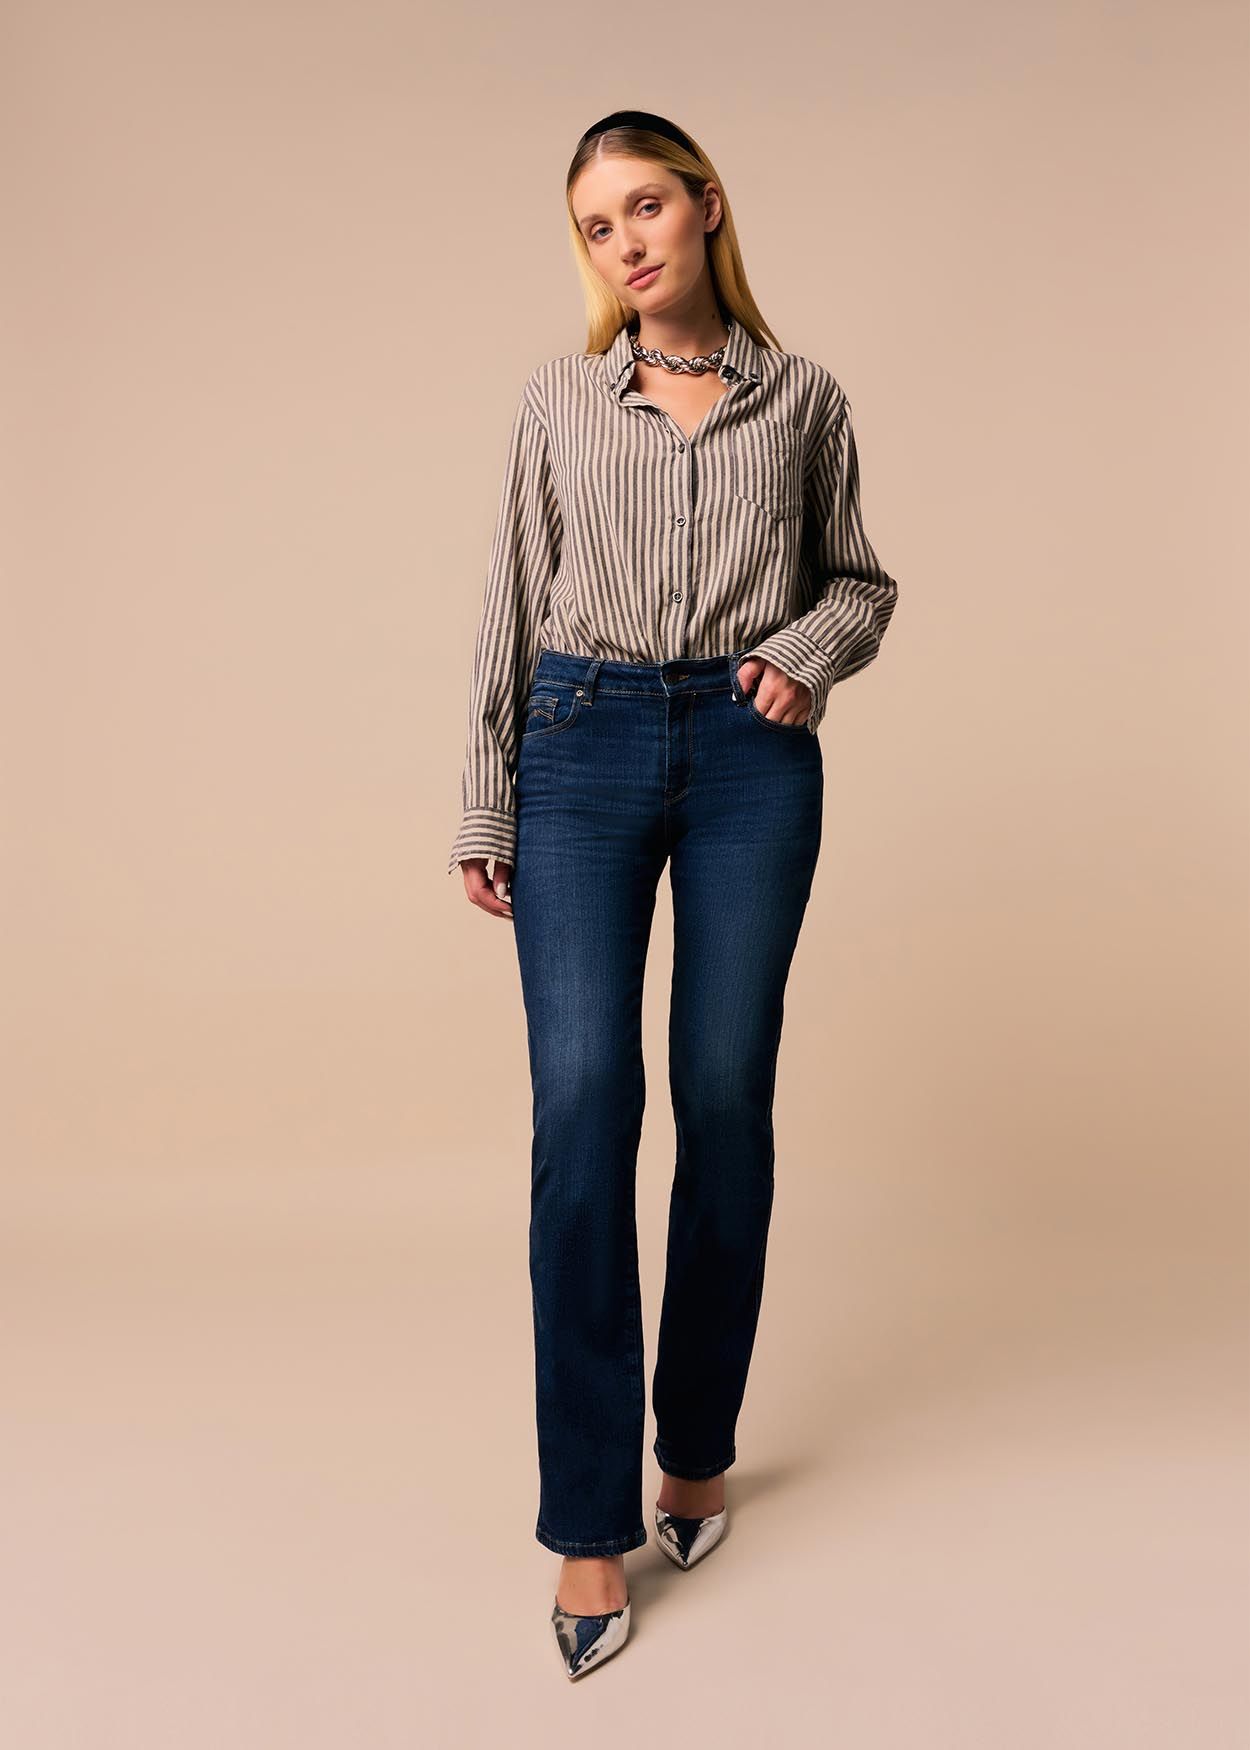 CLAUDIA KYRA - Jeans Taille Basse| Coupe Droite  | Taille en pouces Cimarron